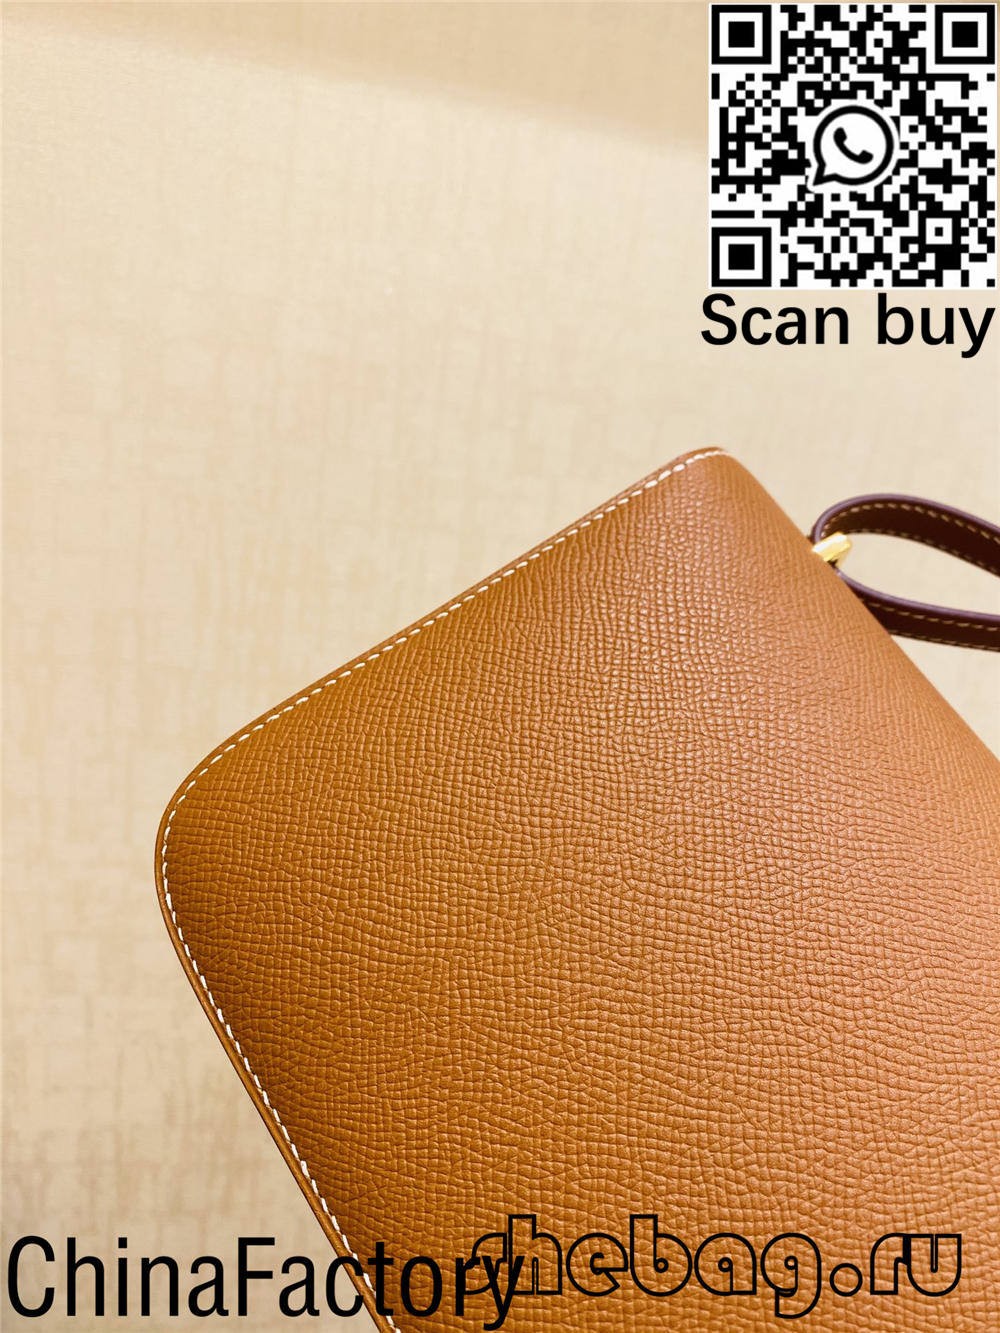 Каде можам да купам евтина и квалитетна реплика на хермес h торба? (Ажурирано 2022 година) - Онлајн продавница за лажни Louis Vuitton торби со најдобар квалитет, дизајнерска торба со реплика ru